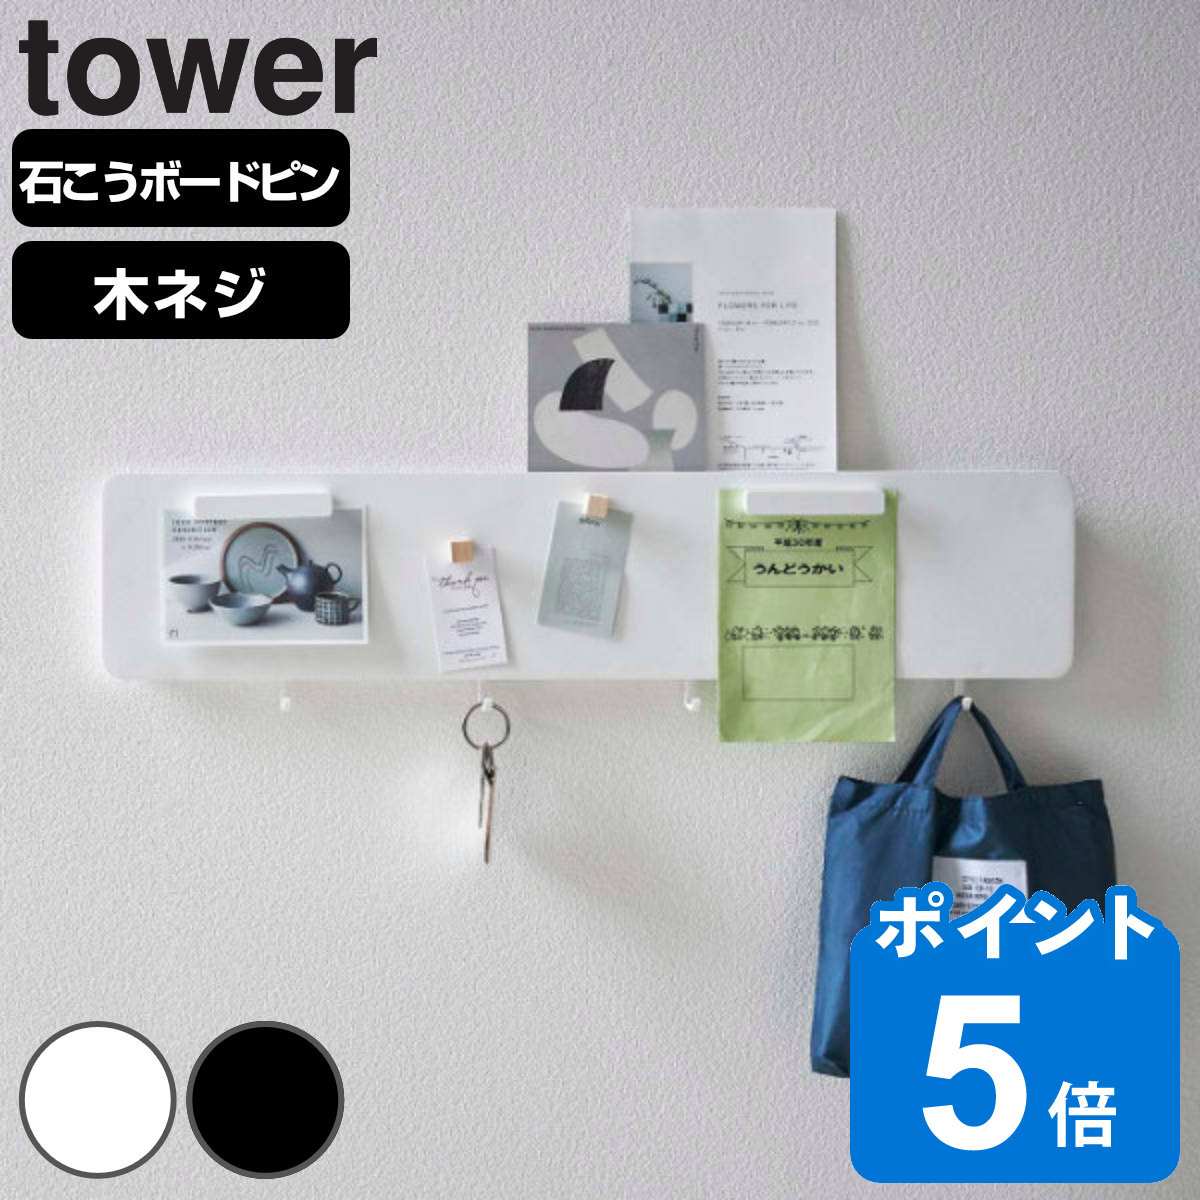 山崎実業 tower フック付きウォールスチールパネル タワー ワイド